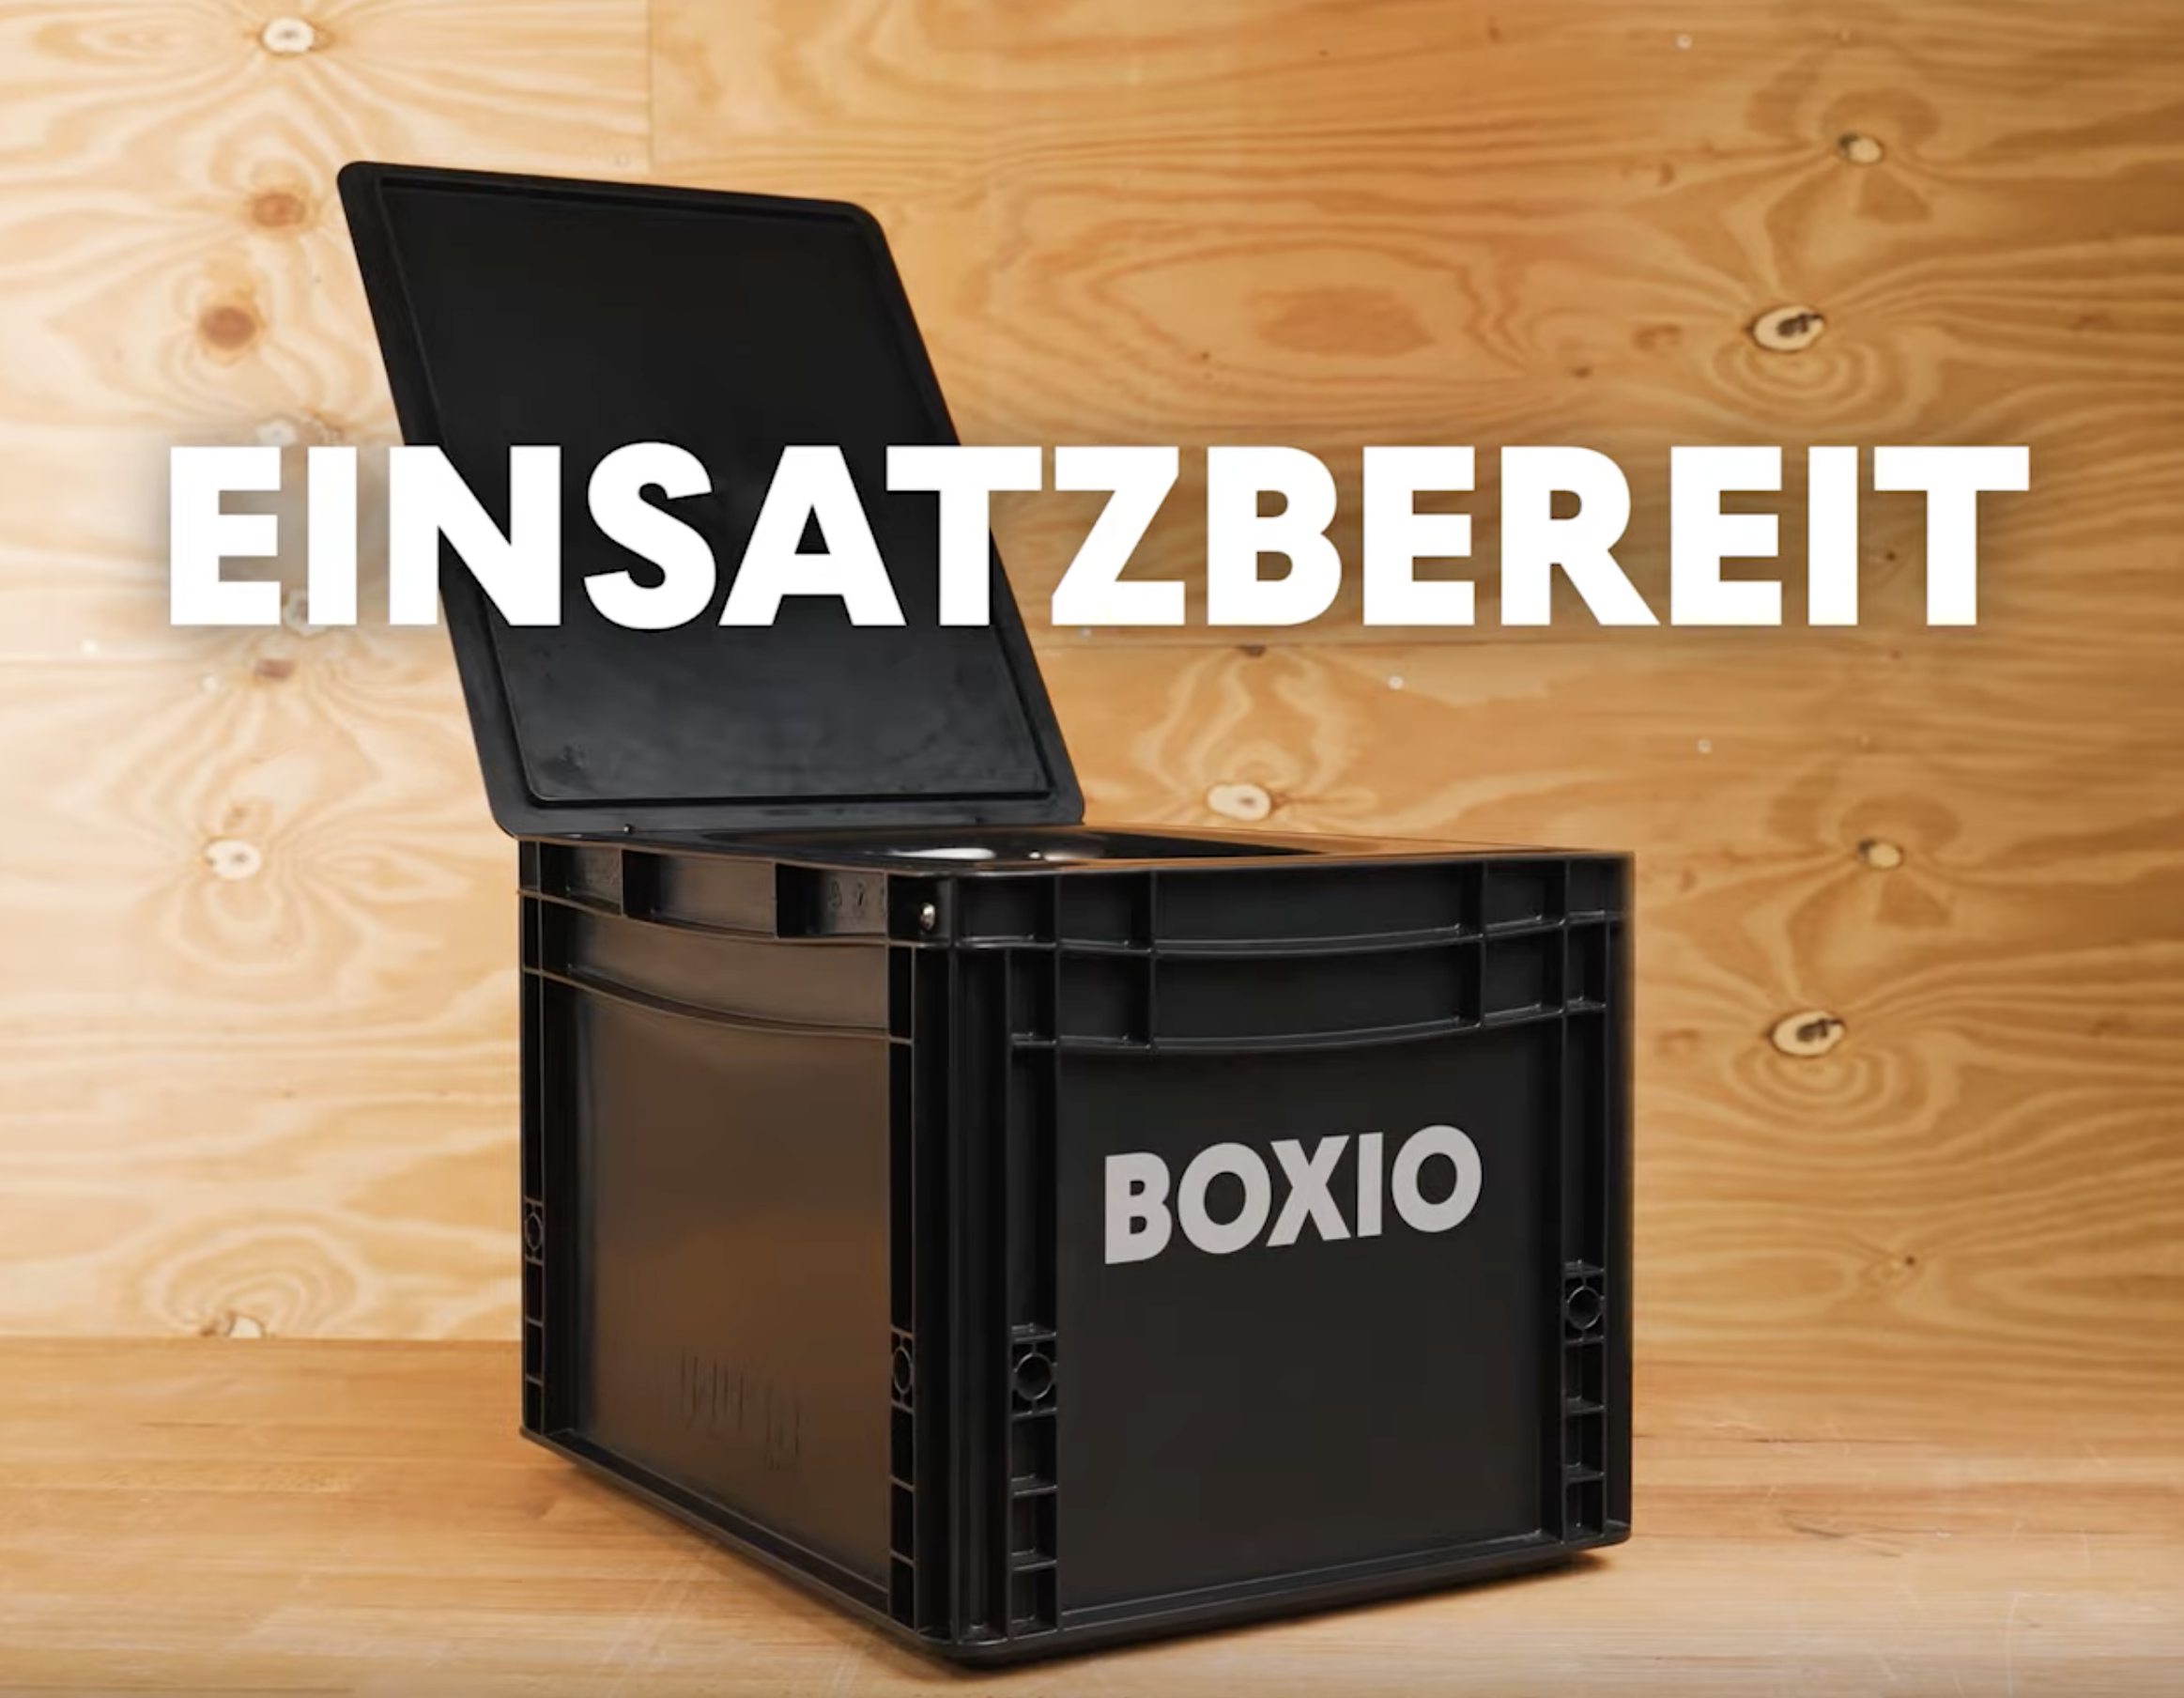 Aufbau und Test der neuen BOXIO Wash, Grosser Vergleich DIY gegen Profis